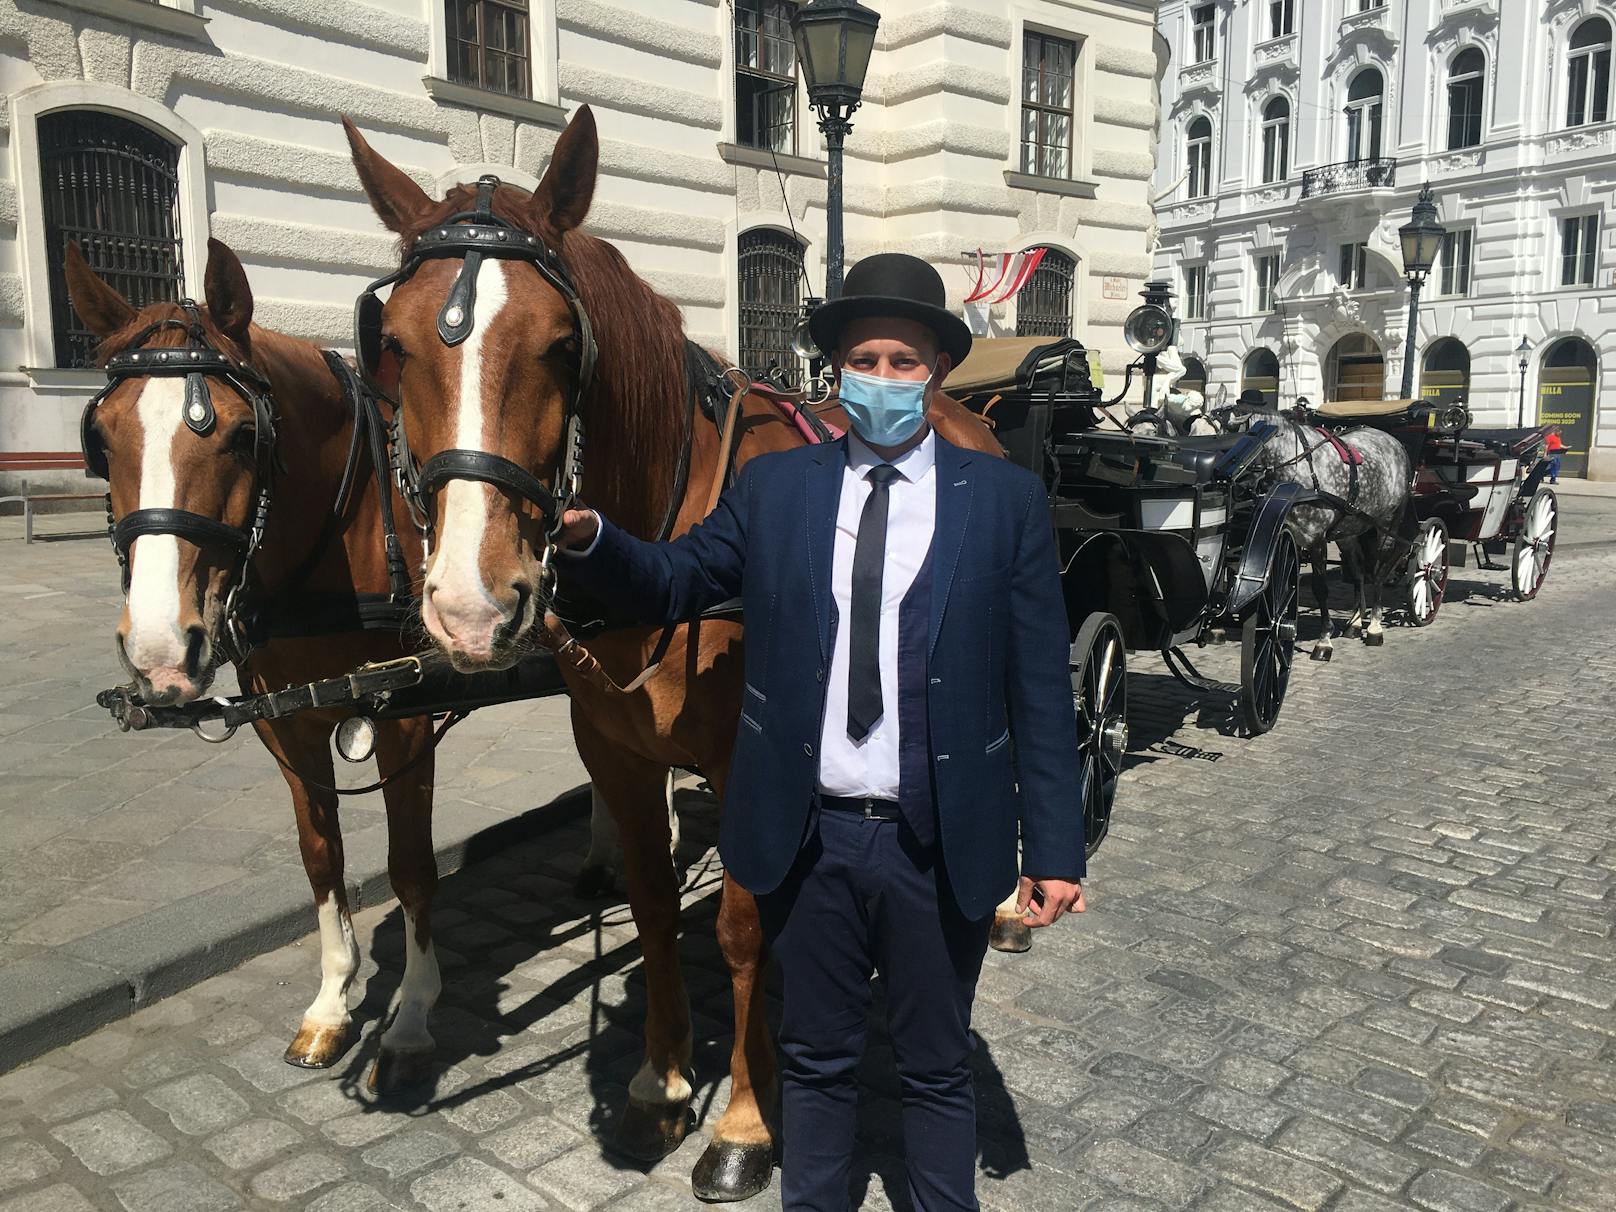 Wir haben uns bereits an die Schutzmasken gewöhnt. Auch dieser Fiakerfahrer im ersten Wiener Bezirk trägt Mund-Nasen-Schutz.